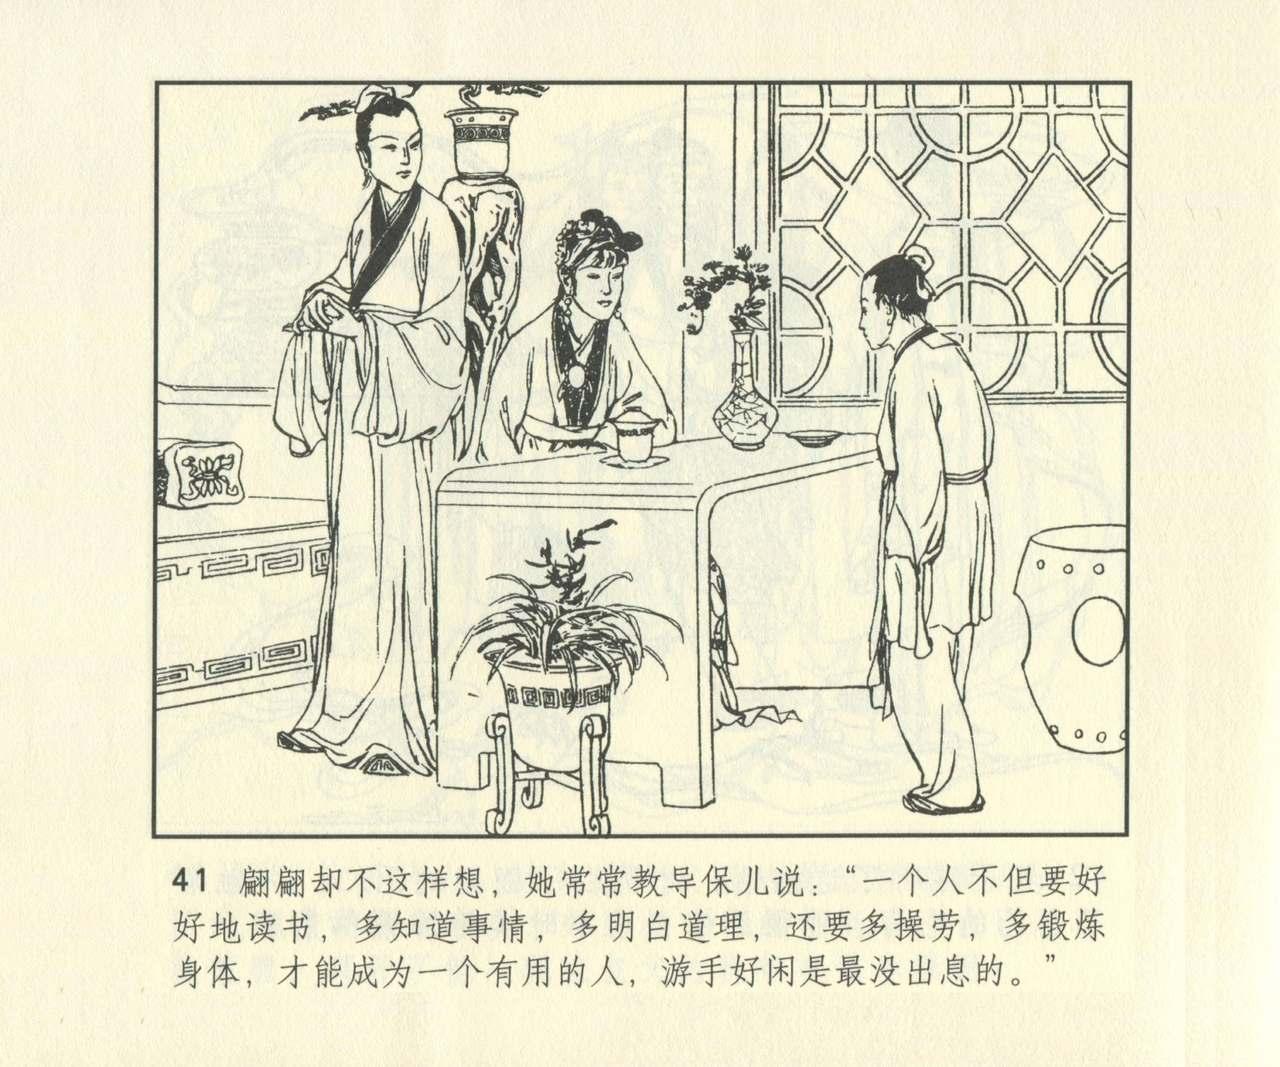 聊斋志异 张玮等绘 天津人民美术出版社 卷二十一 ~ 三十 657